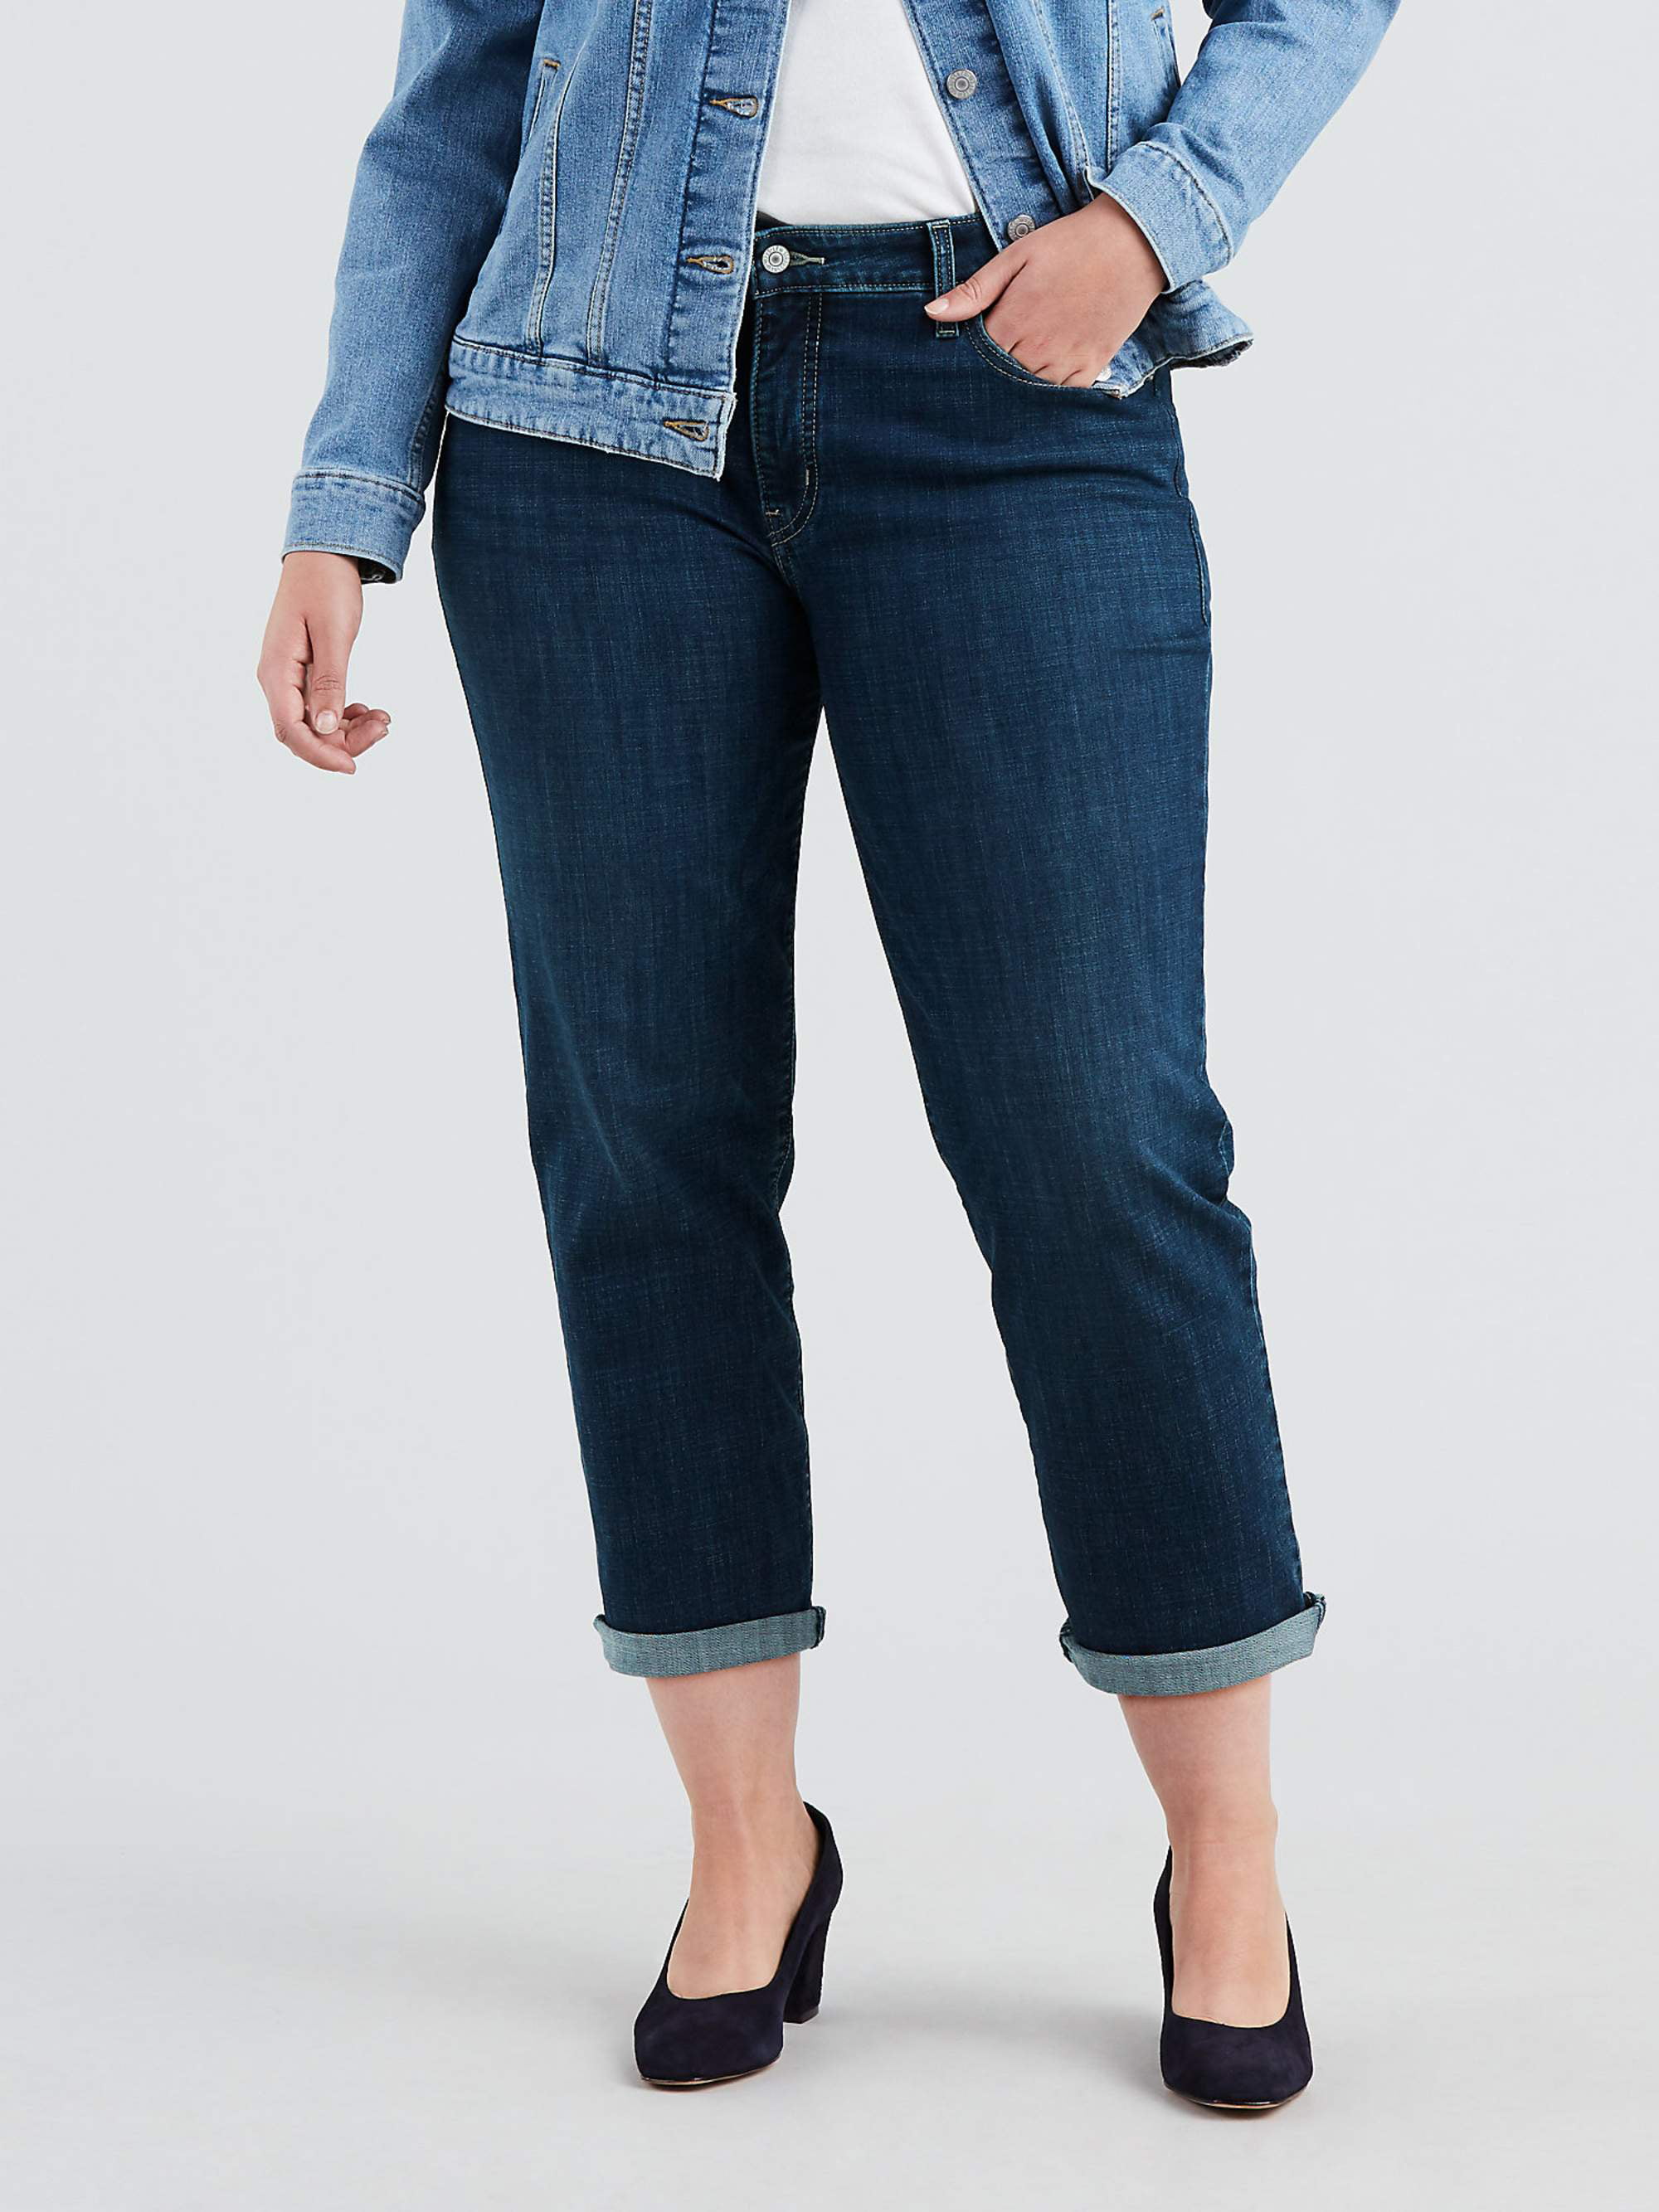 Levis Women's Plus Size Mid Rise Boyfriend Jeans - Walmart.com